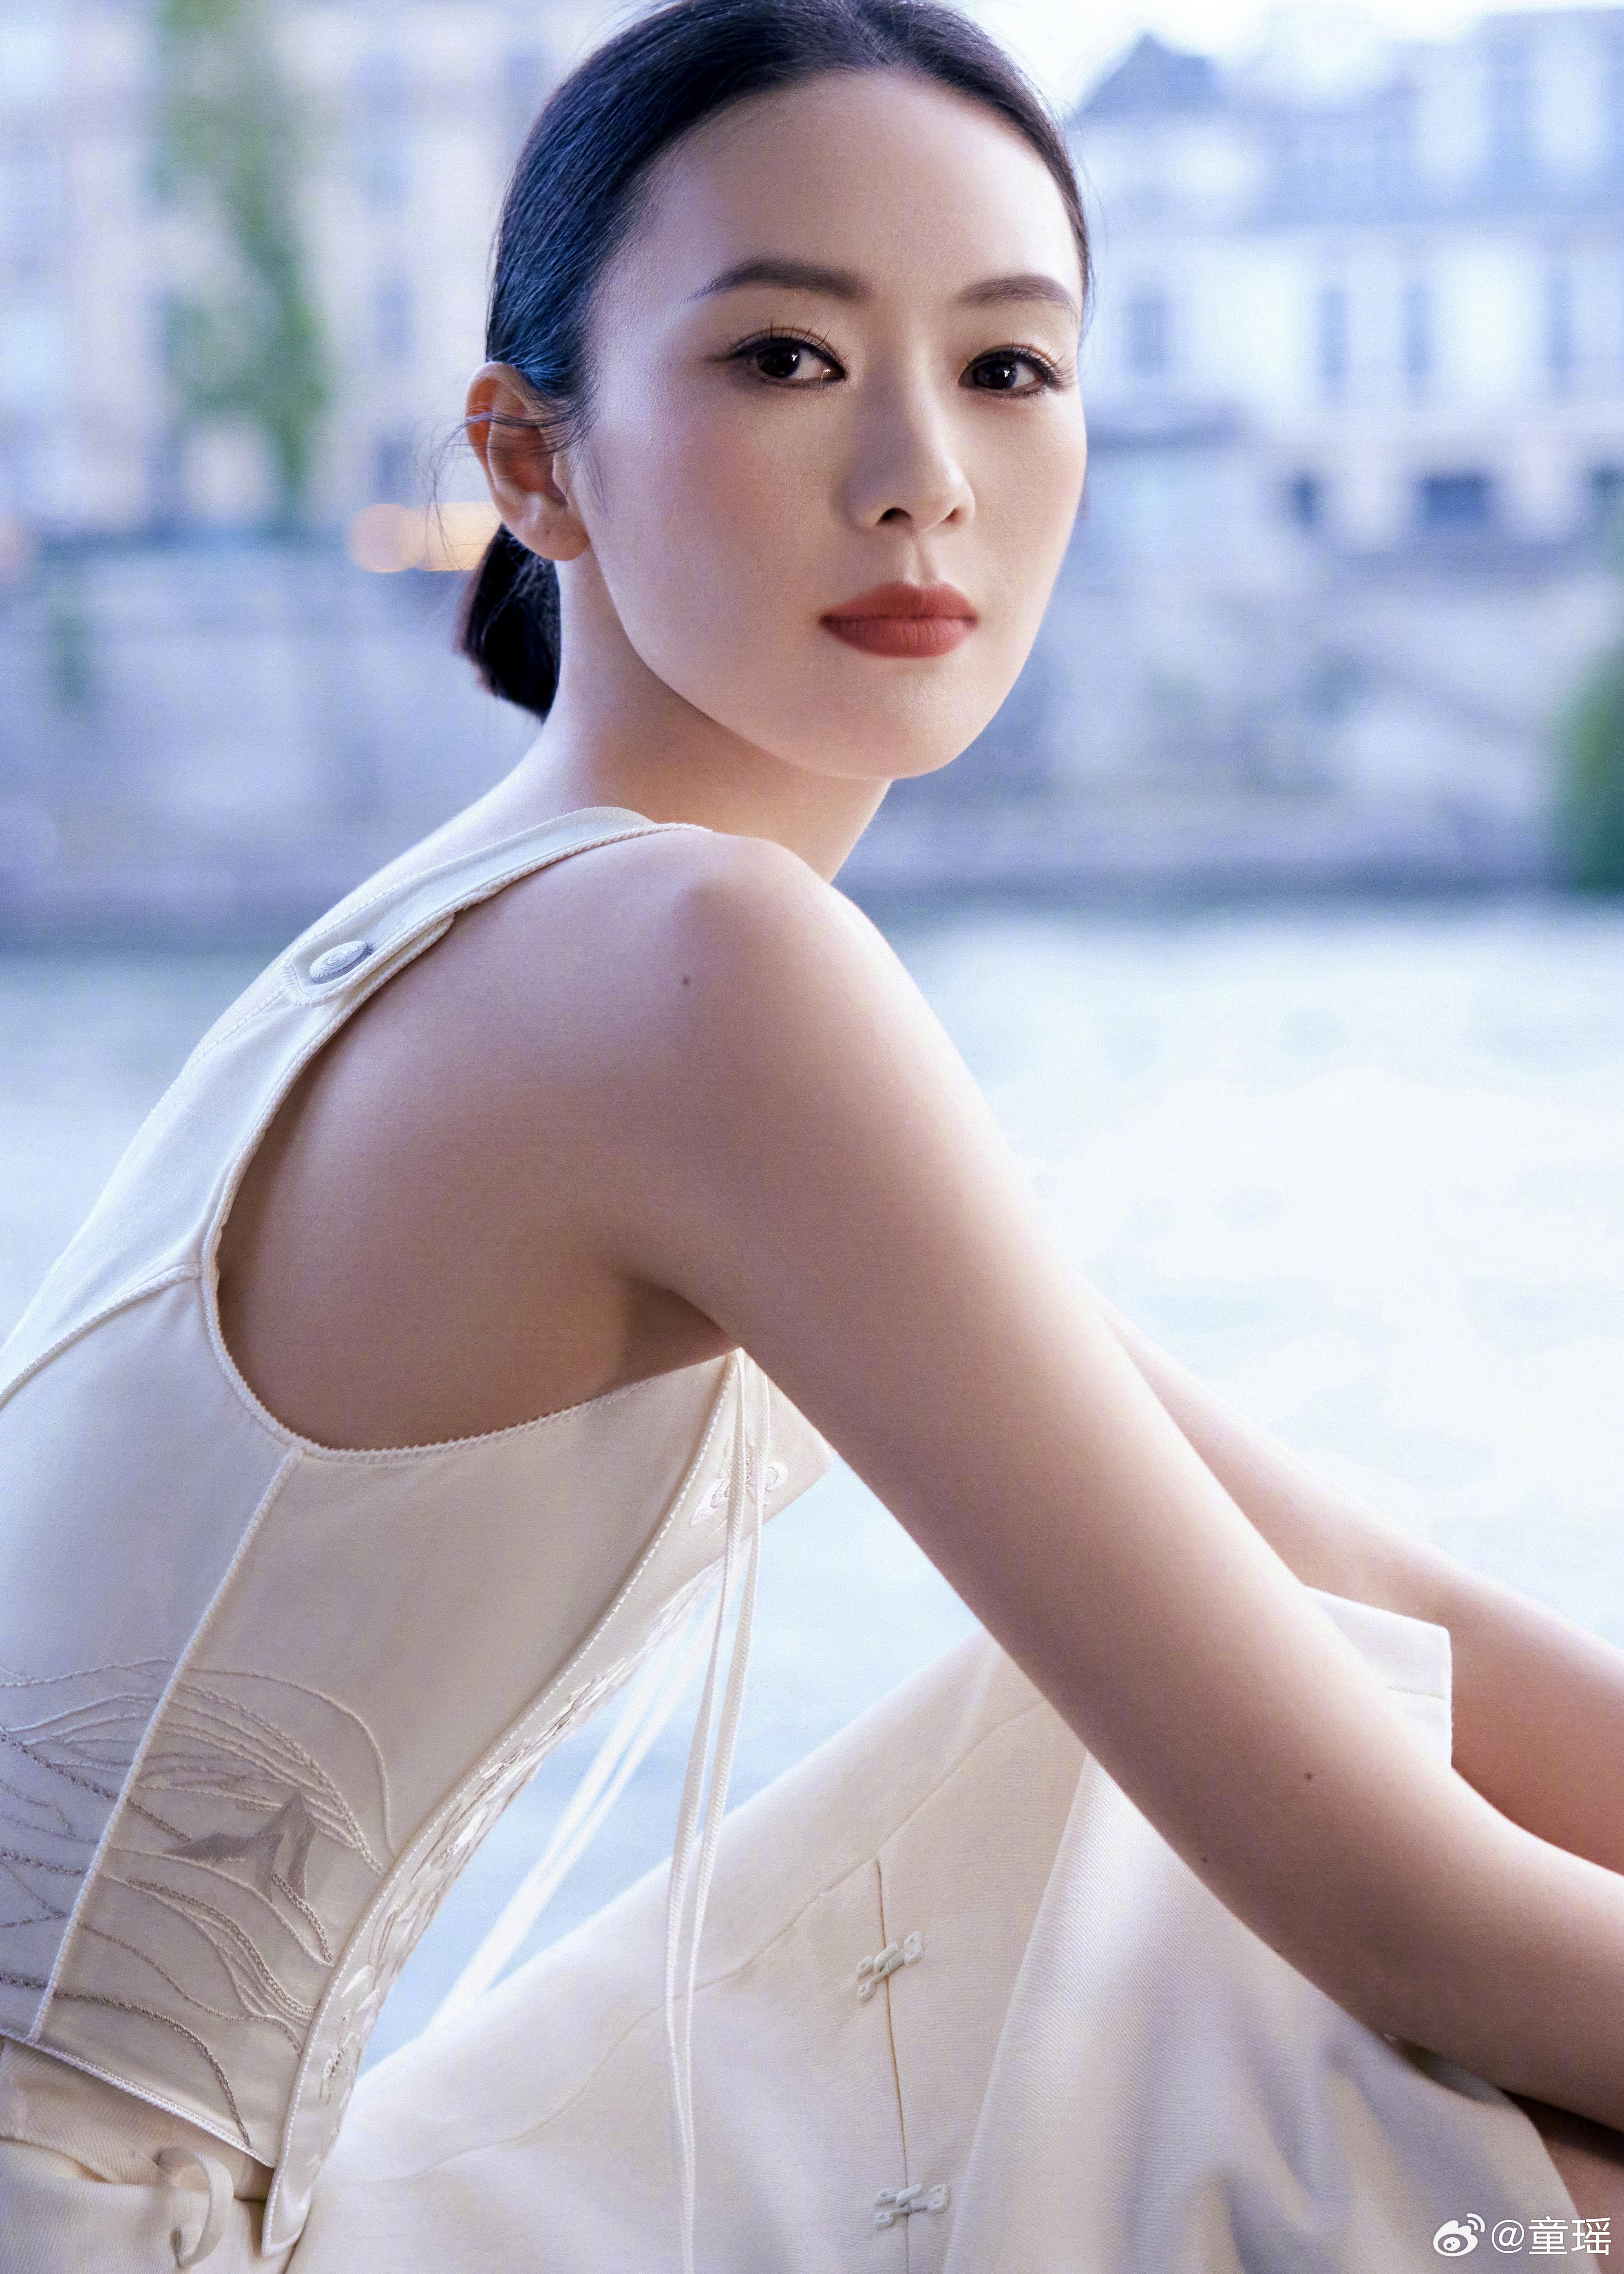 童瑶白色新中式套装现身塞纳河畔 纯洁优雅如东方茉莉,1 (1)